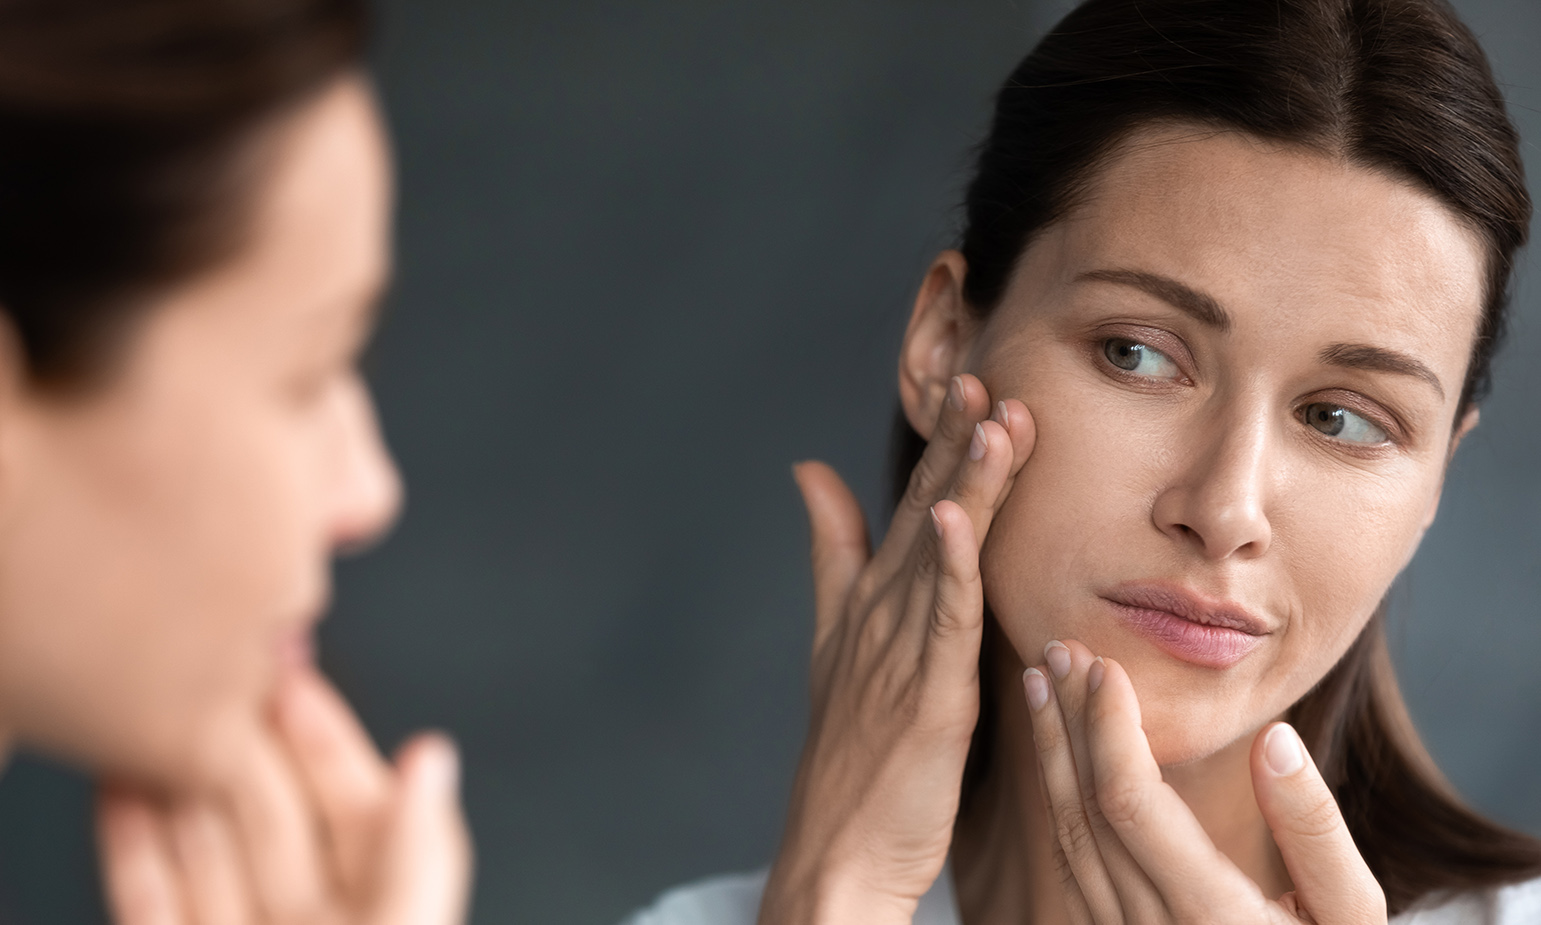 Woman examining face in mirror unhappy